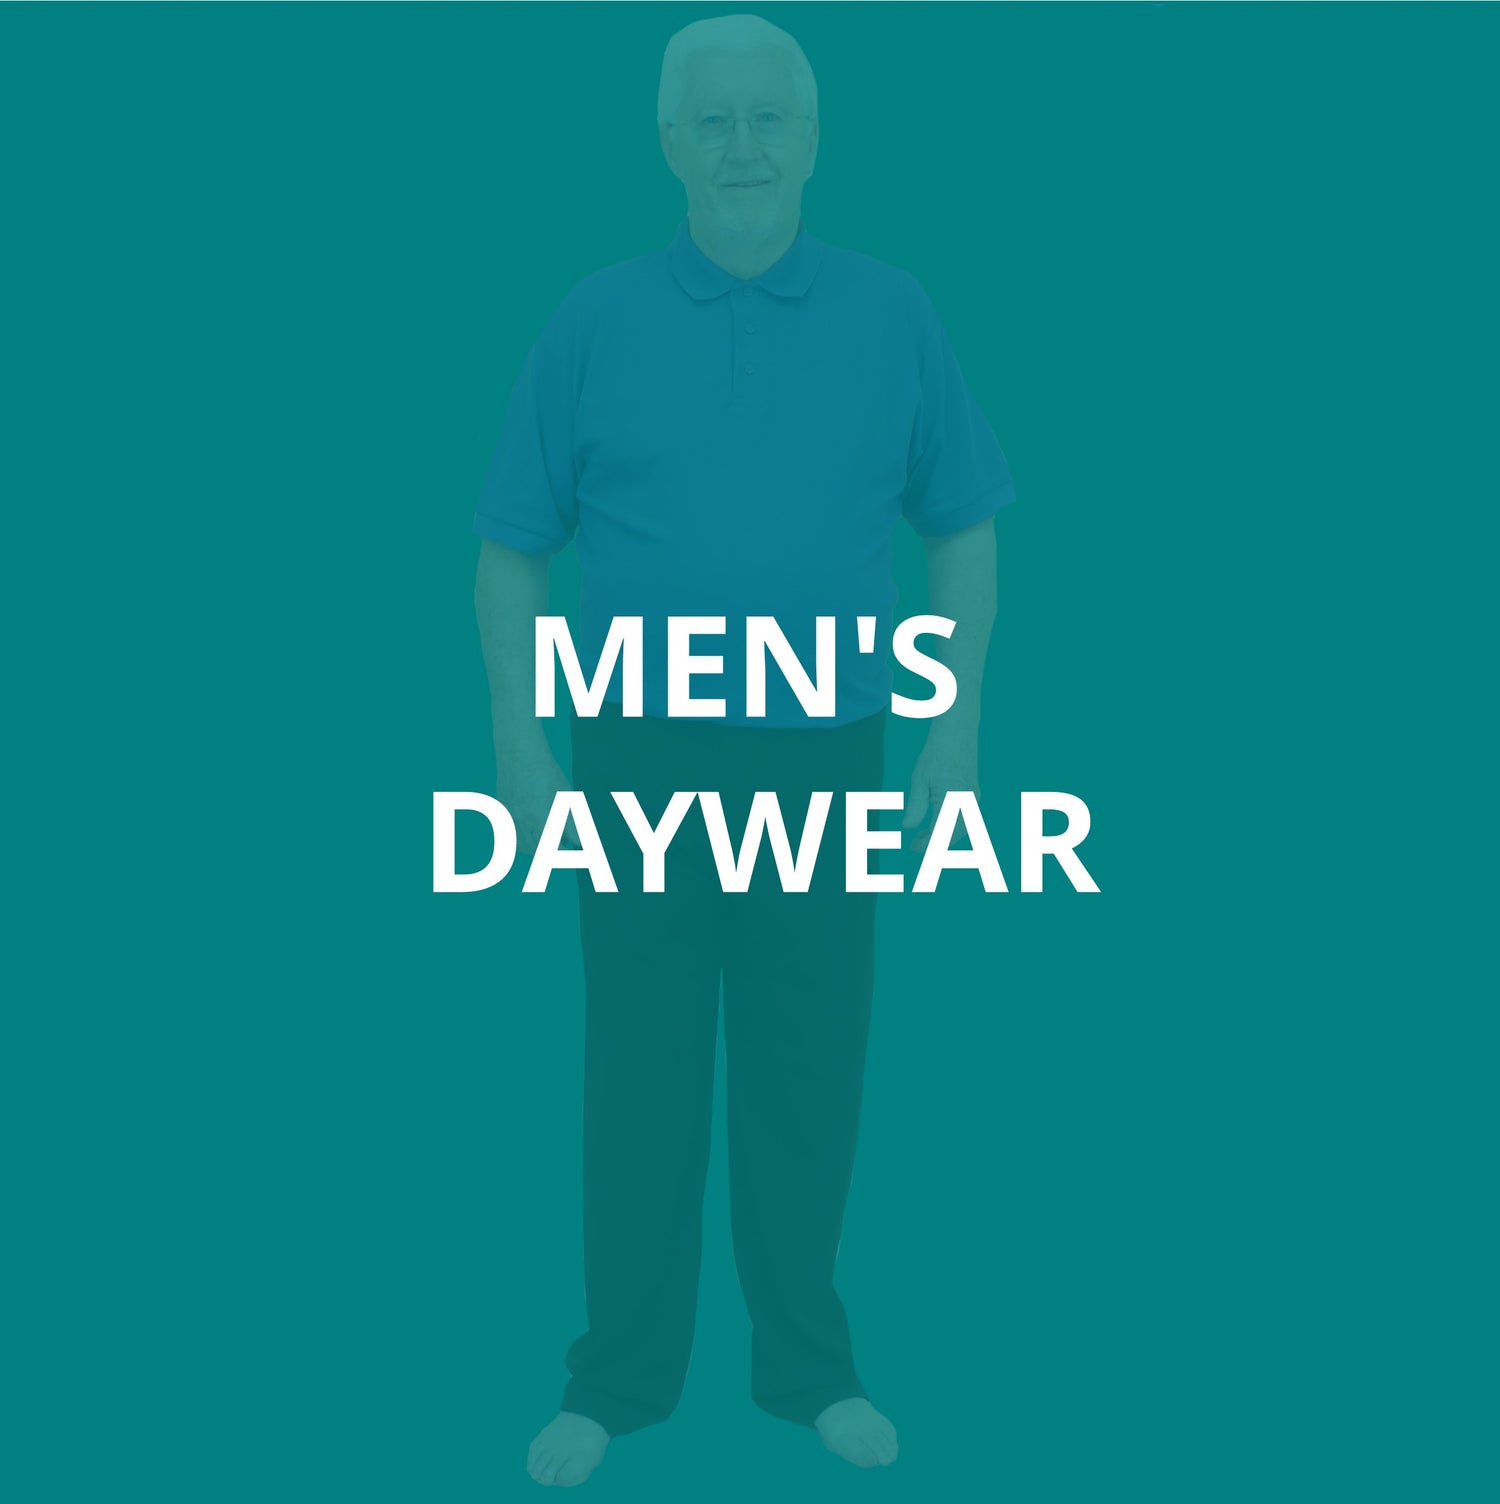 Men's Daywear